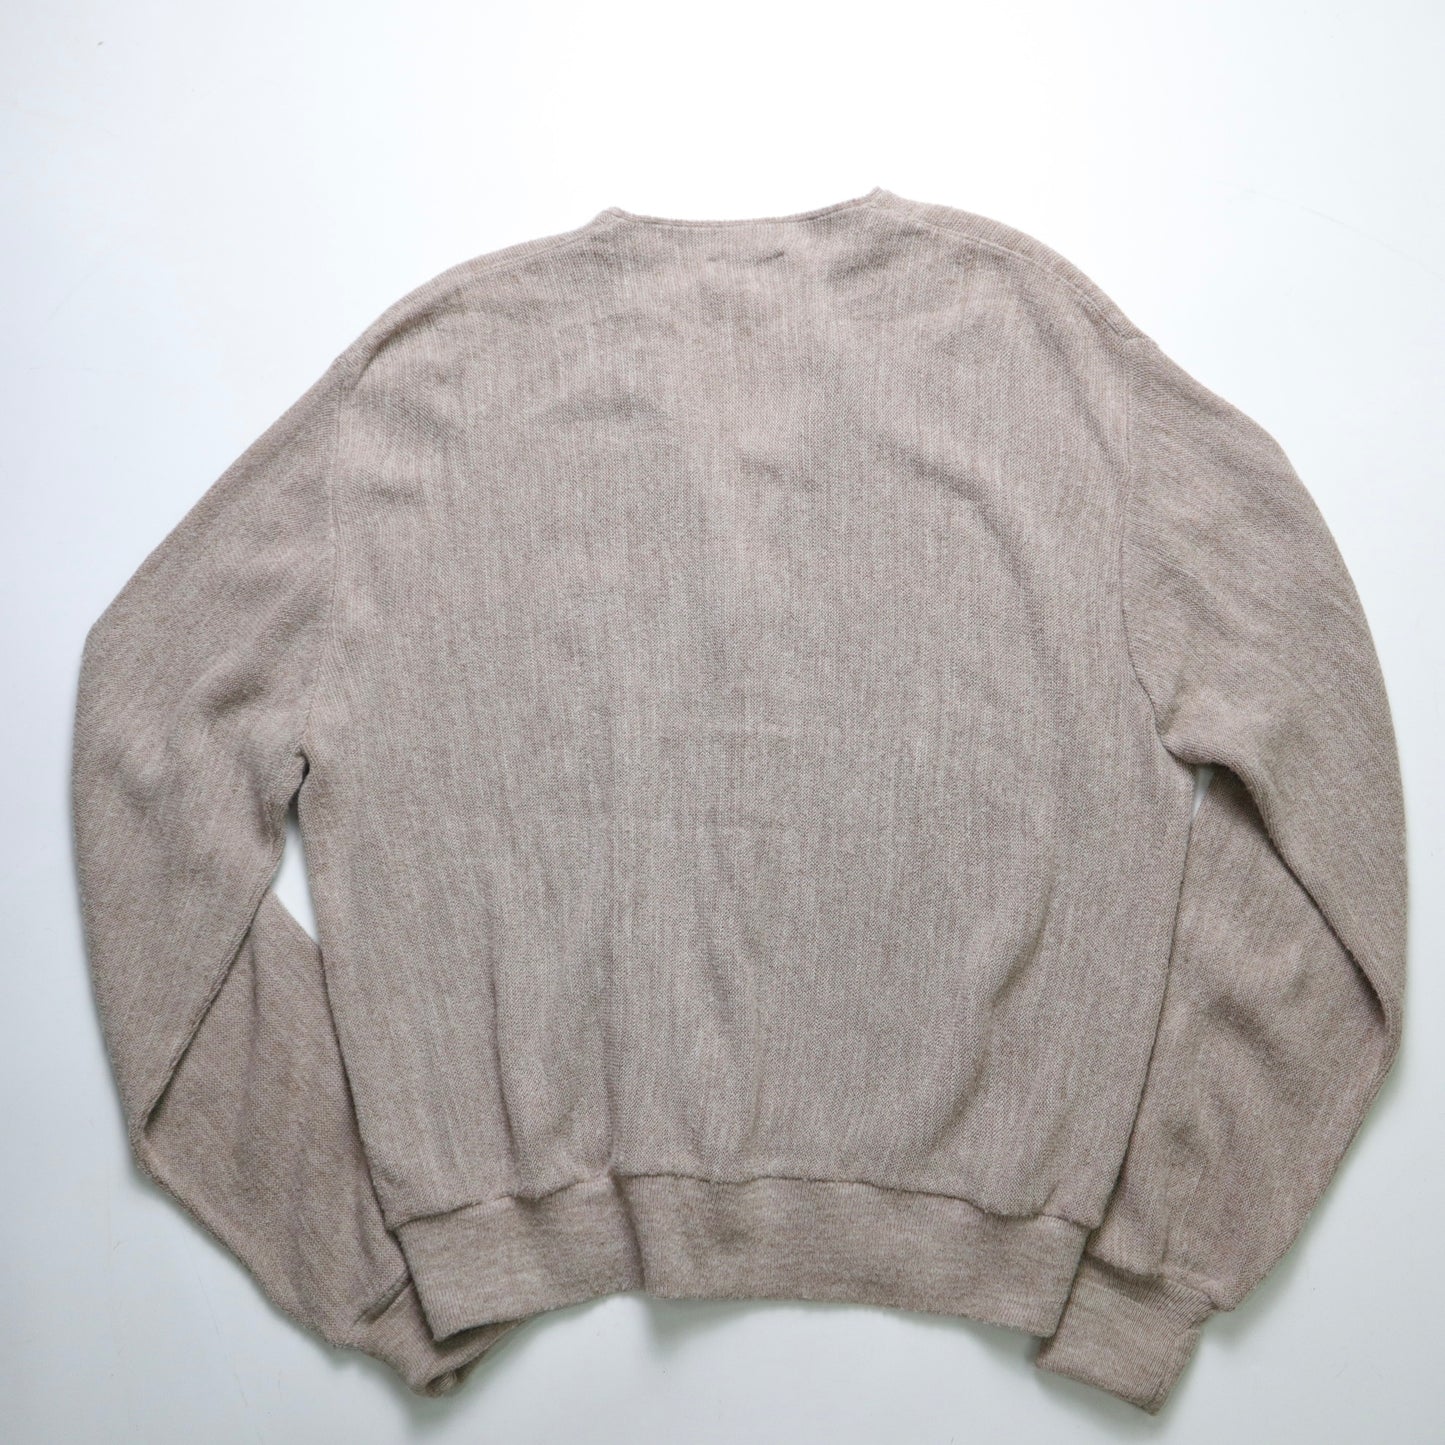 1980s Lacoste IZOD American-made milk tea cardigan sweater